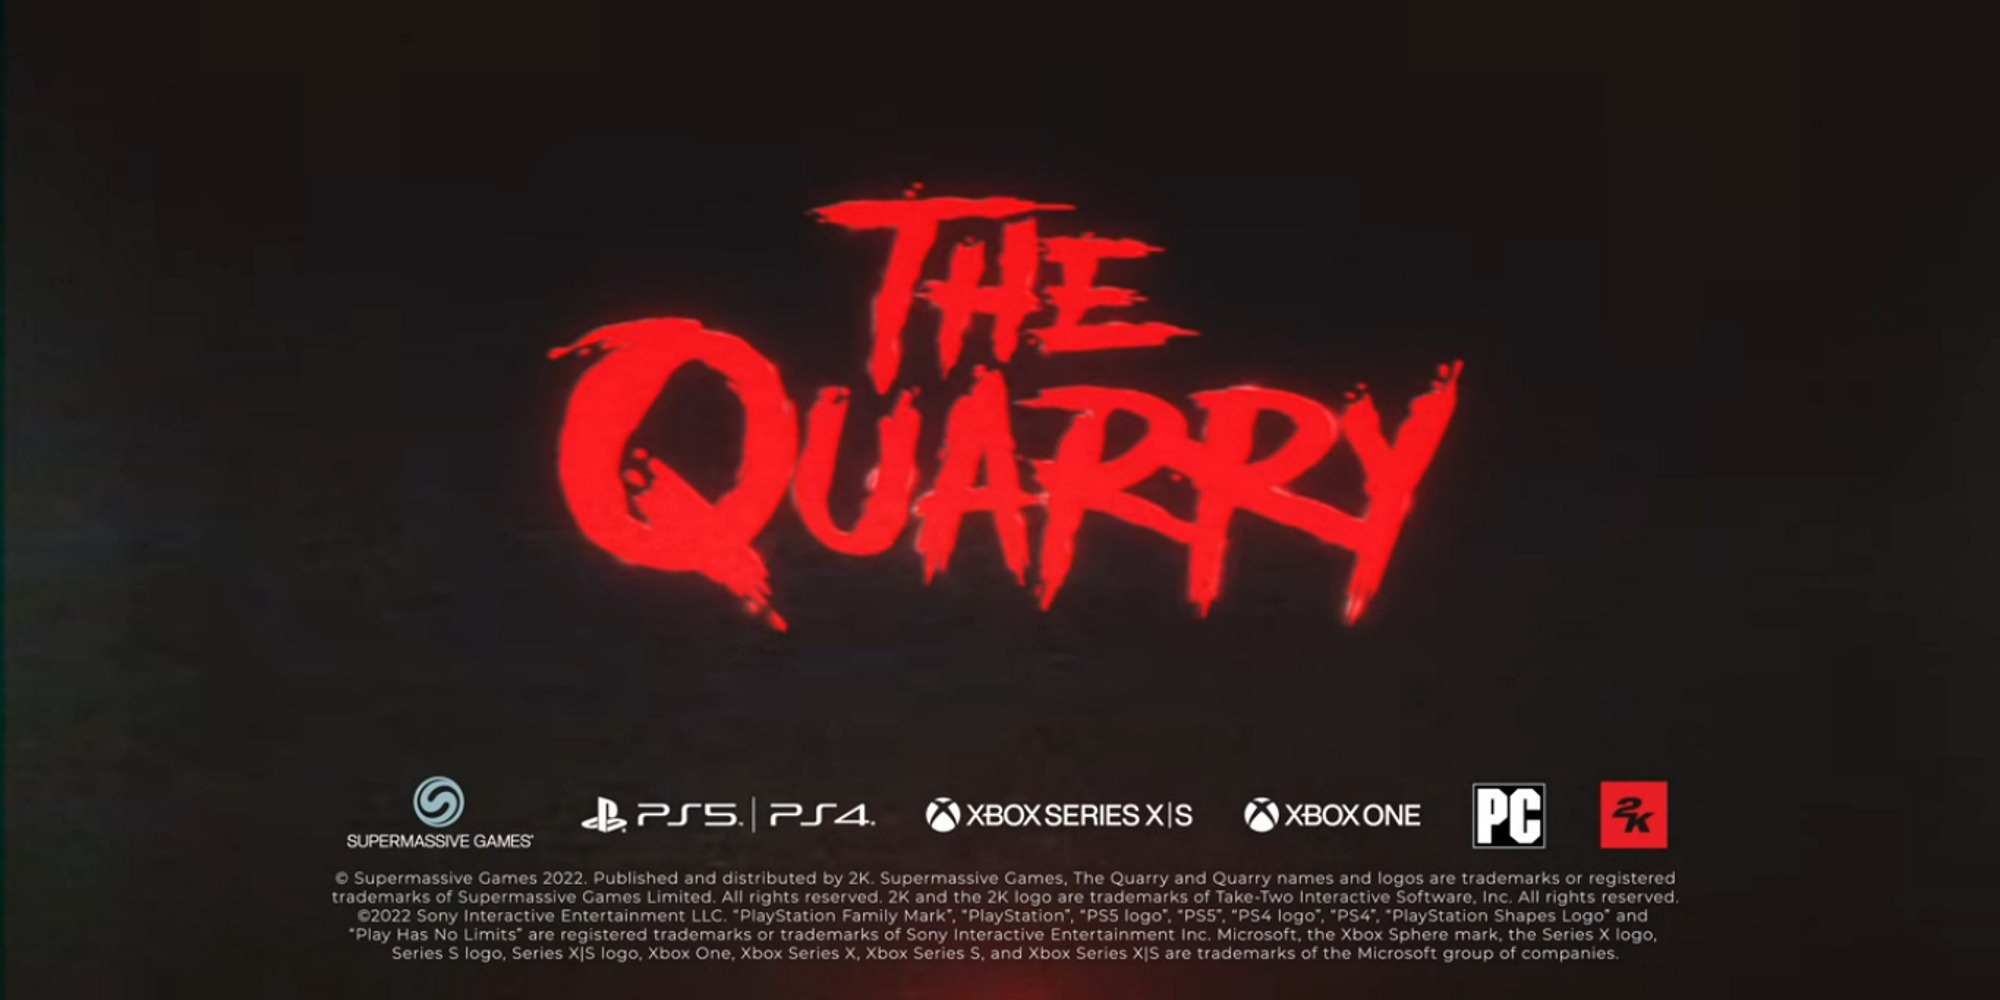 The Quarry: Jogo de terror é lançado para PS4, PS5 e Xbox